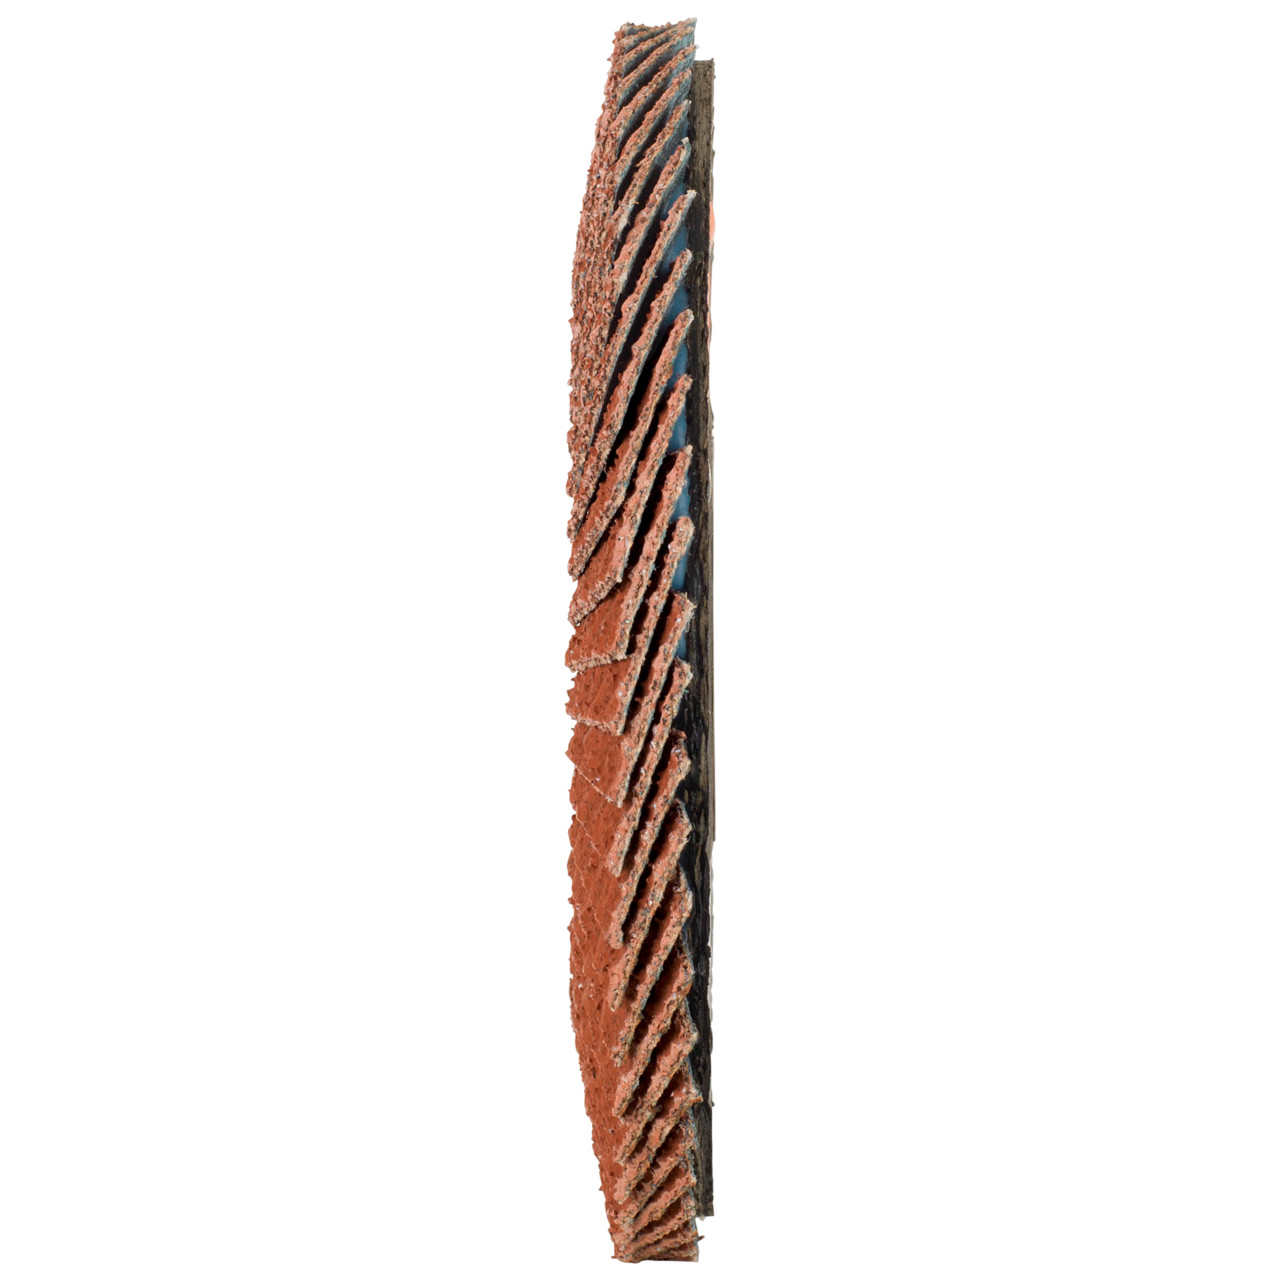 Tyrolit Rondelle éventail DxH 125x22,23 Pour les métaux non ferreux, P40, Forme : 28A - modèle droit (modèle à corps en fibre de verre), Art. 707159